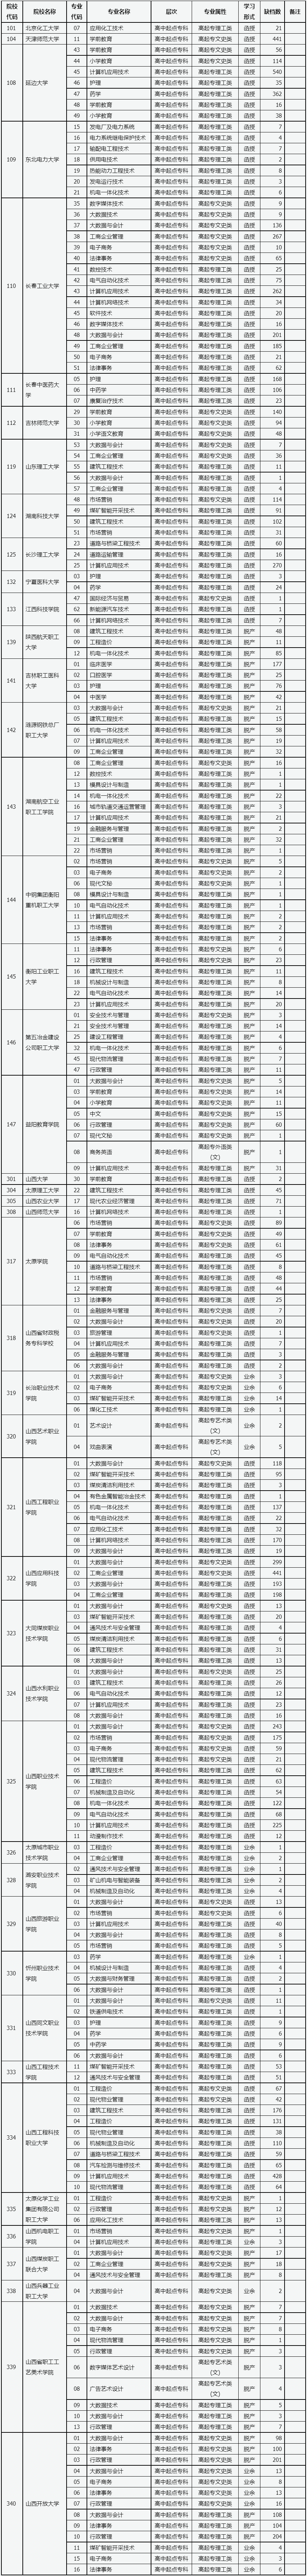 山西省2022年成人高校招生征集志愿公告第7号.png